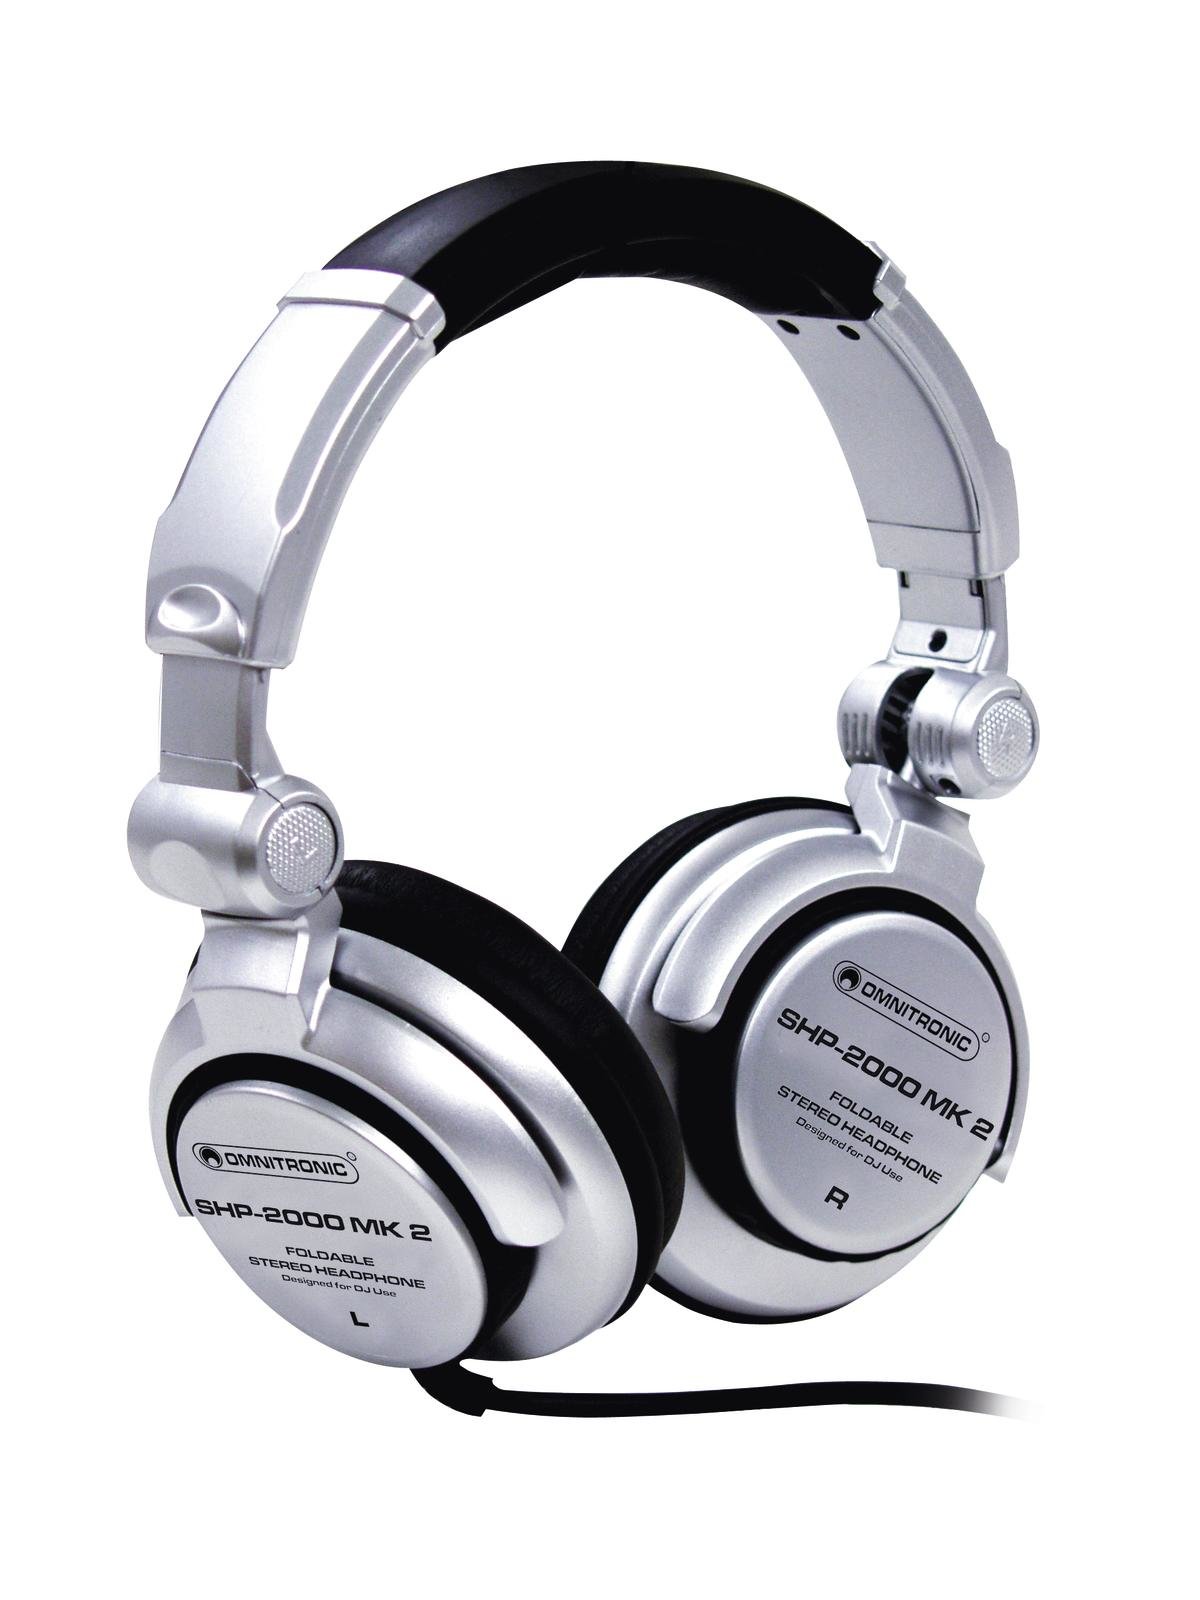 DJ Sluchátka, stříbrný design, robustní provedení 20 Hz - 20 kHz